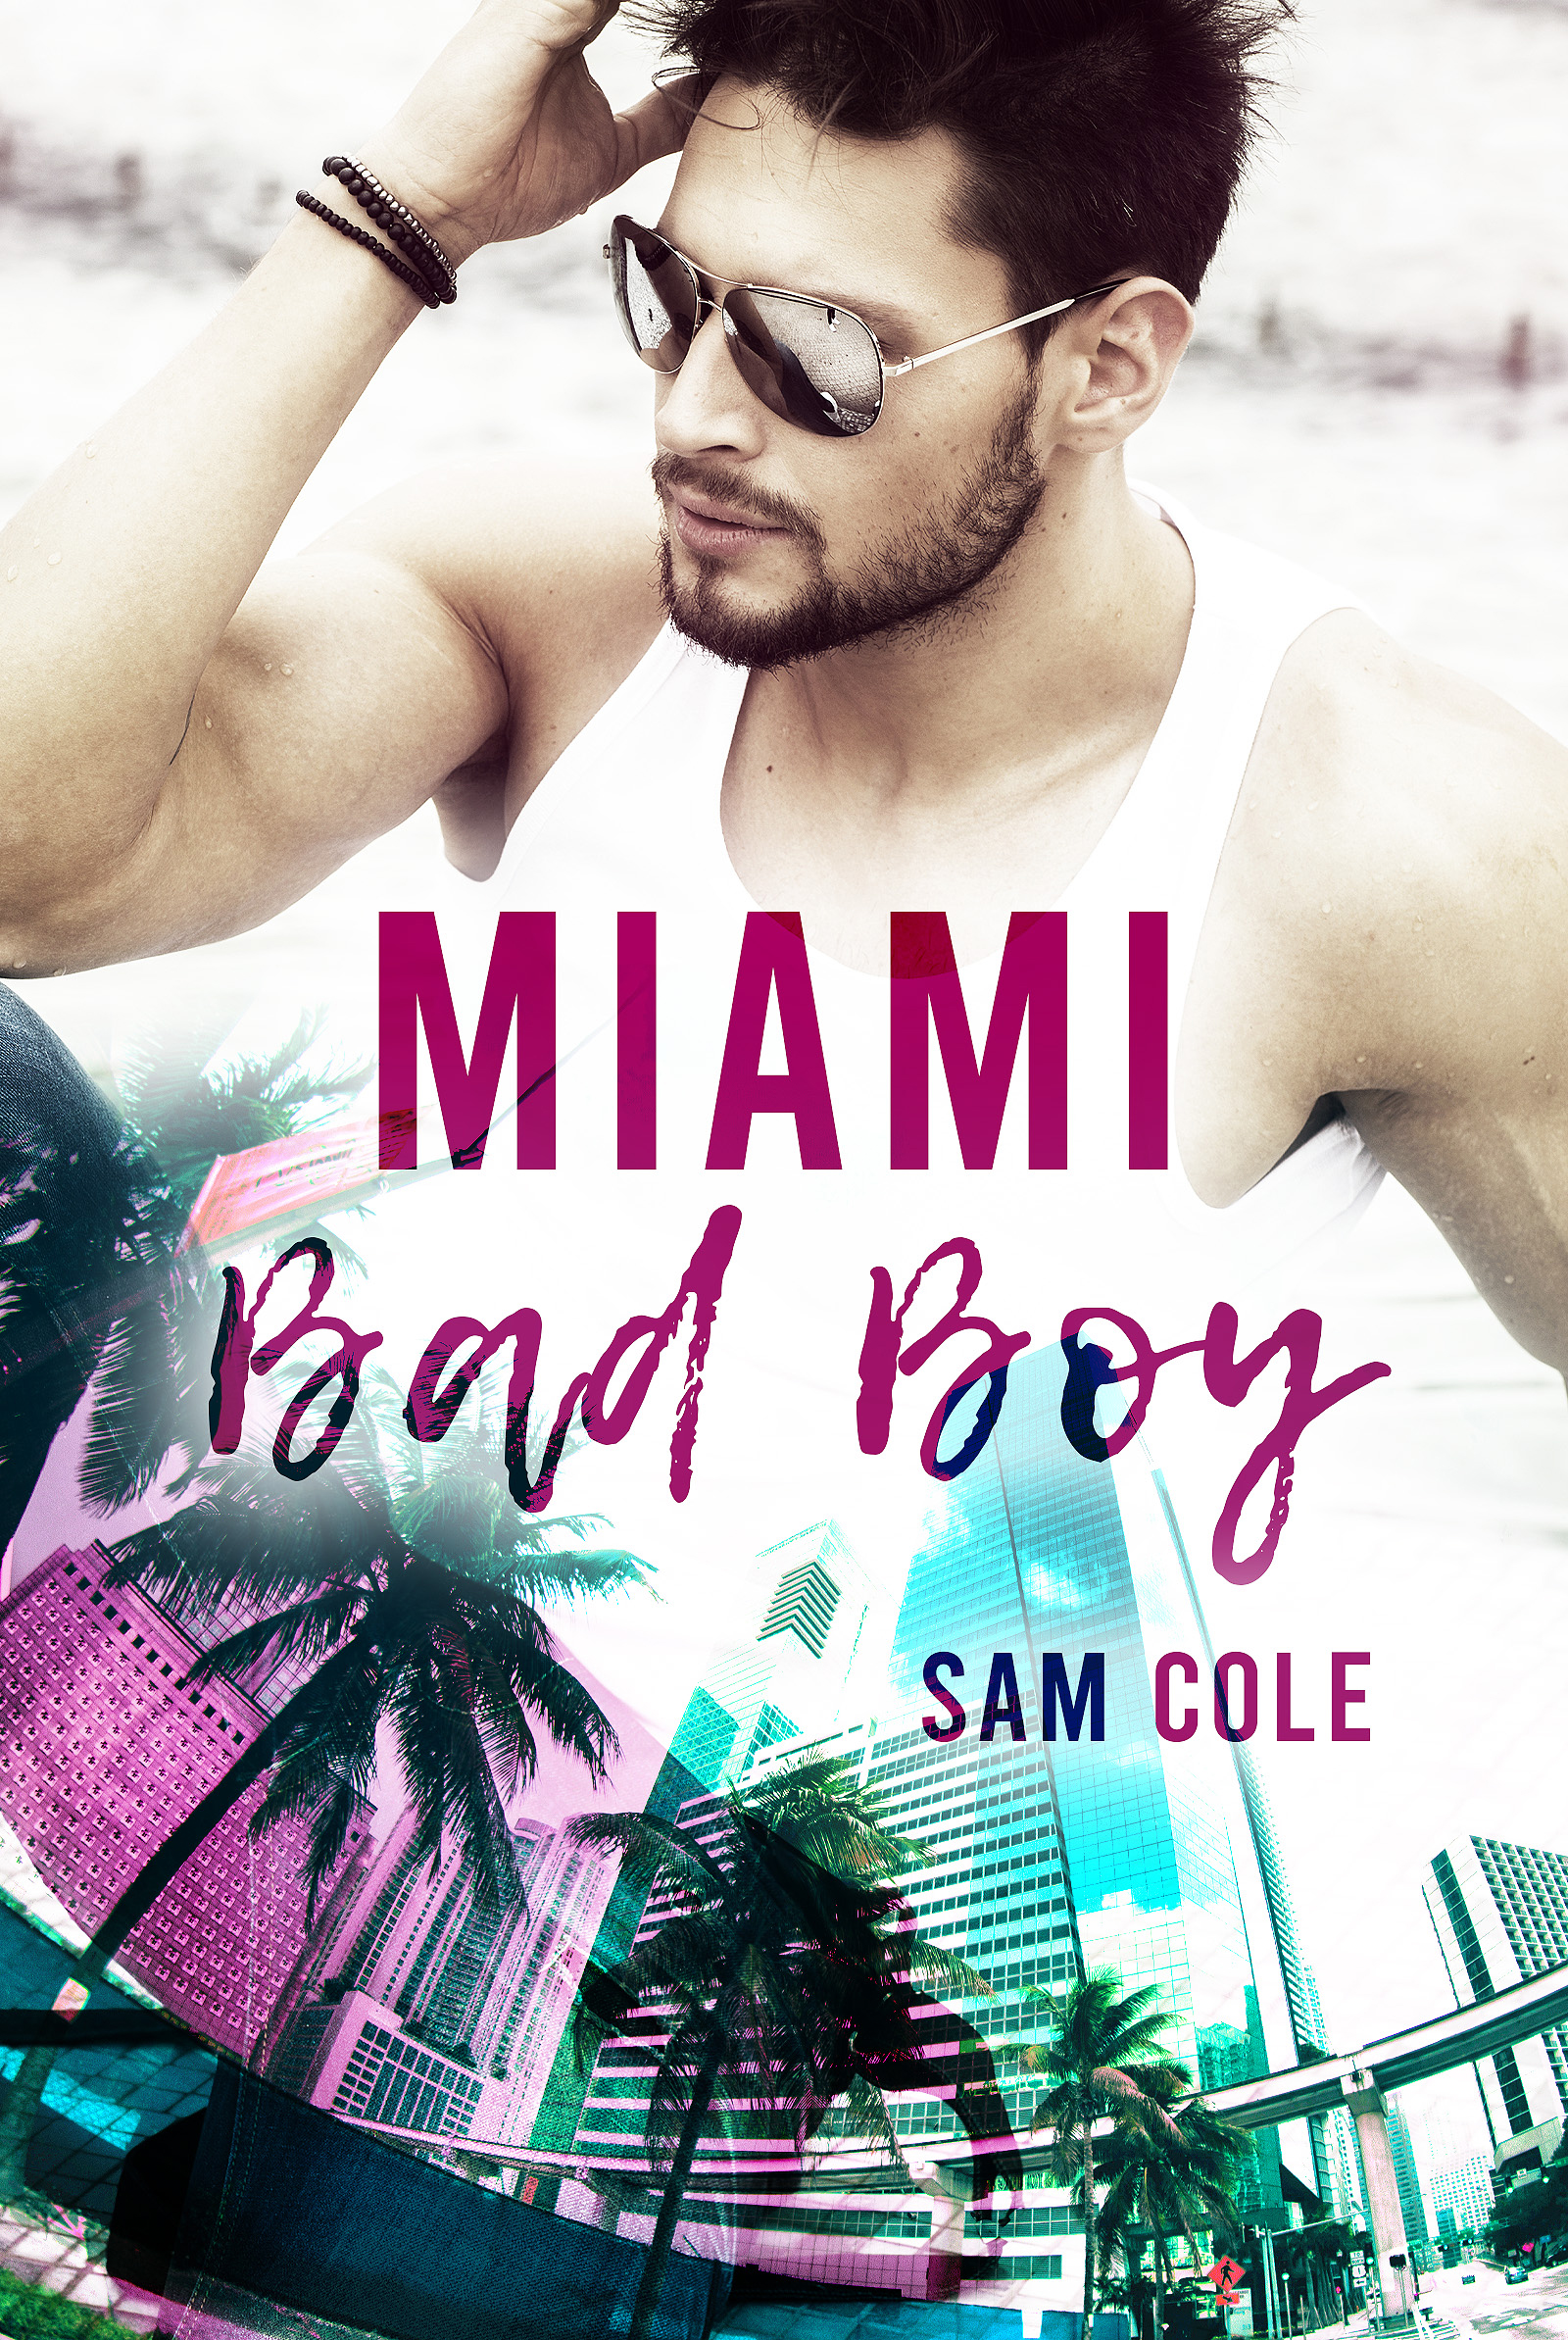 Miami Bad Boy